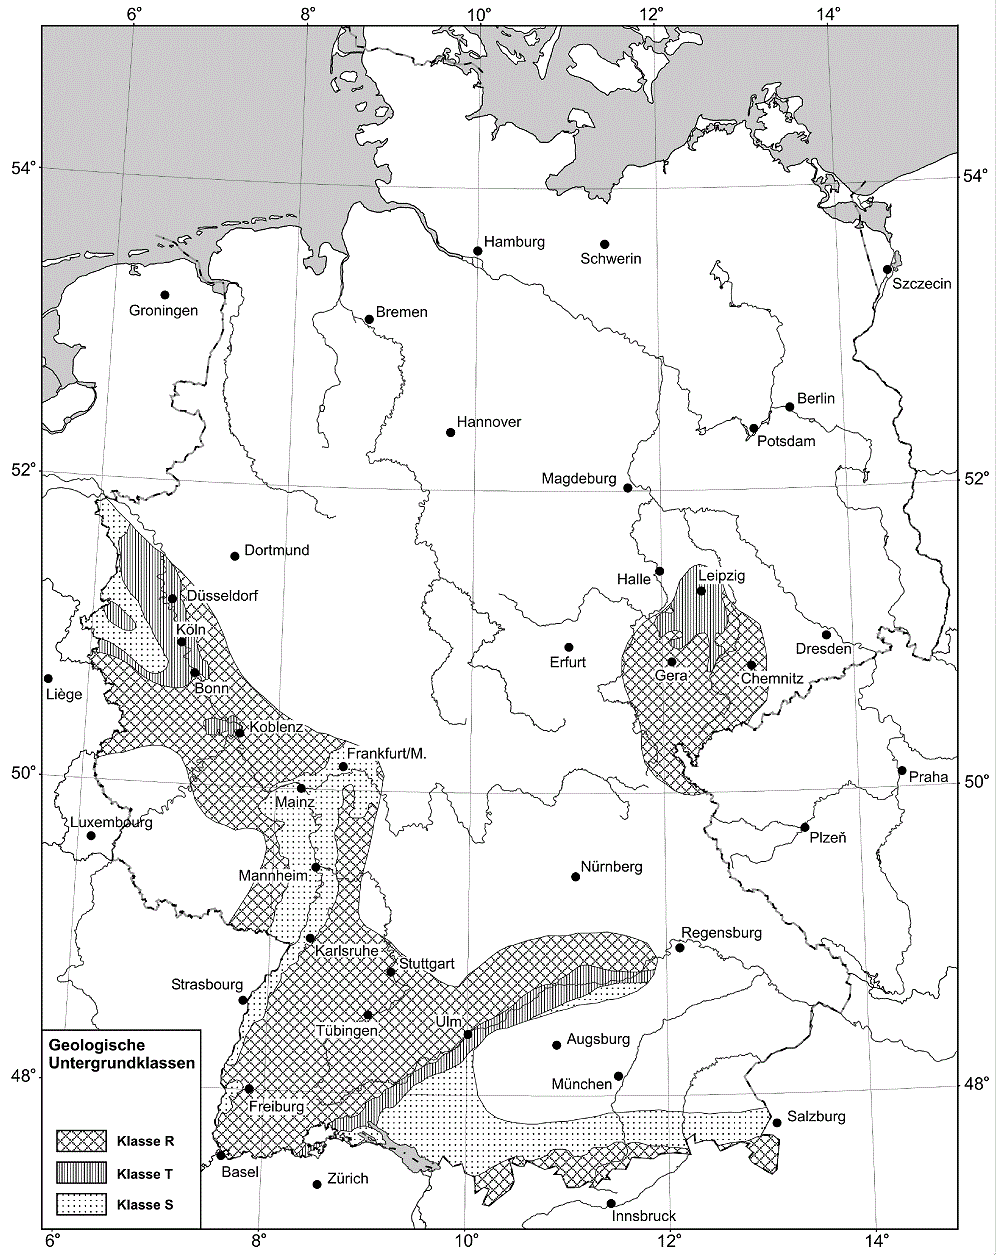 Geologische Untergrundklassen in Deutschland